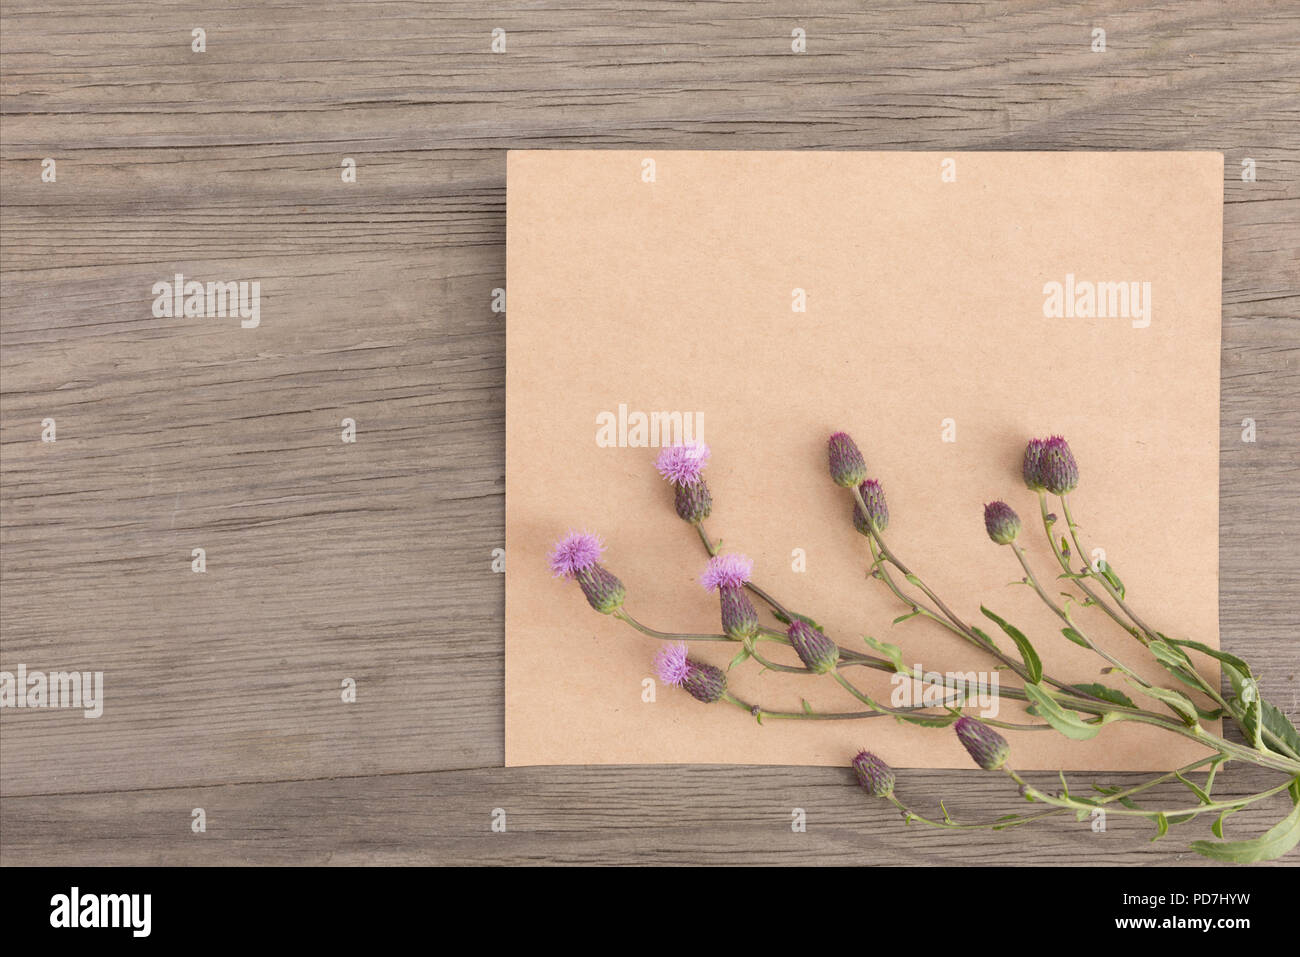 Viola con fiori di campo artigianali fatti a mano notebook sul vecchio grunge sfondo di legno. Vista dall'alto. In stile minimalista mockup. Foto Stock